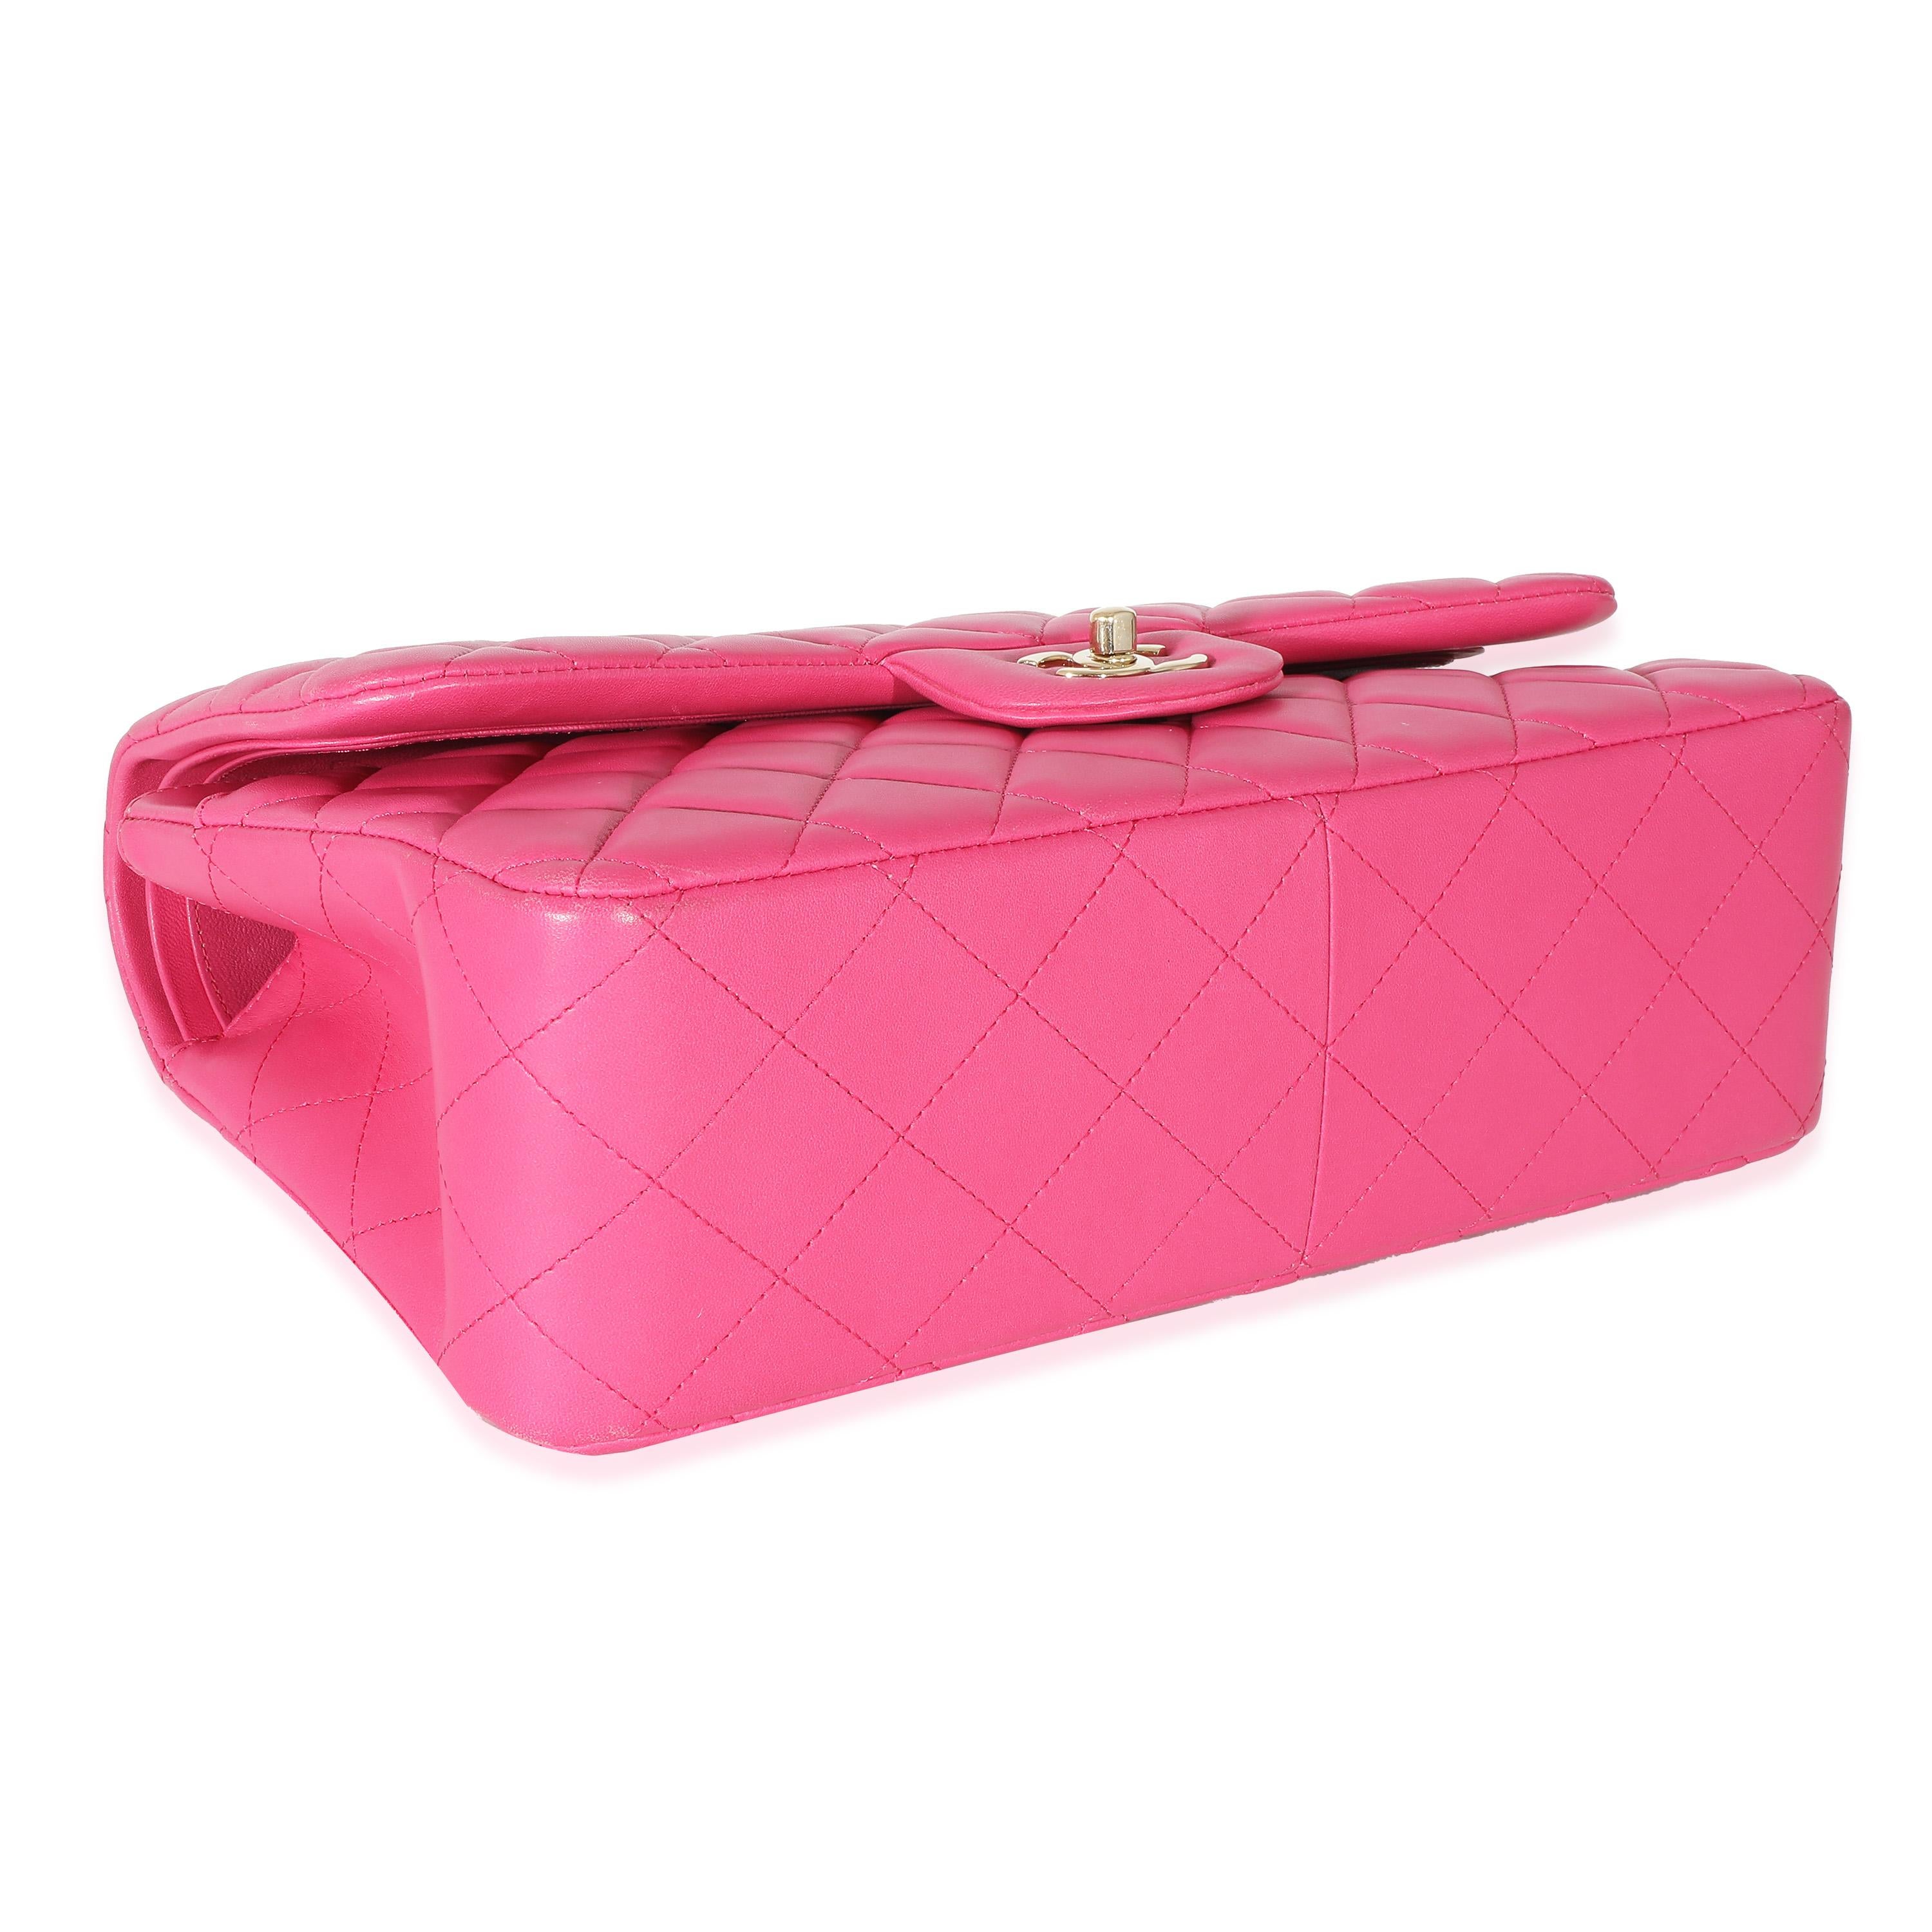 Chanel Pink Lambskin Jumbo Classic Double Flap Bag 2